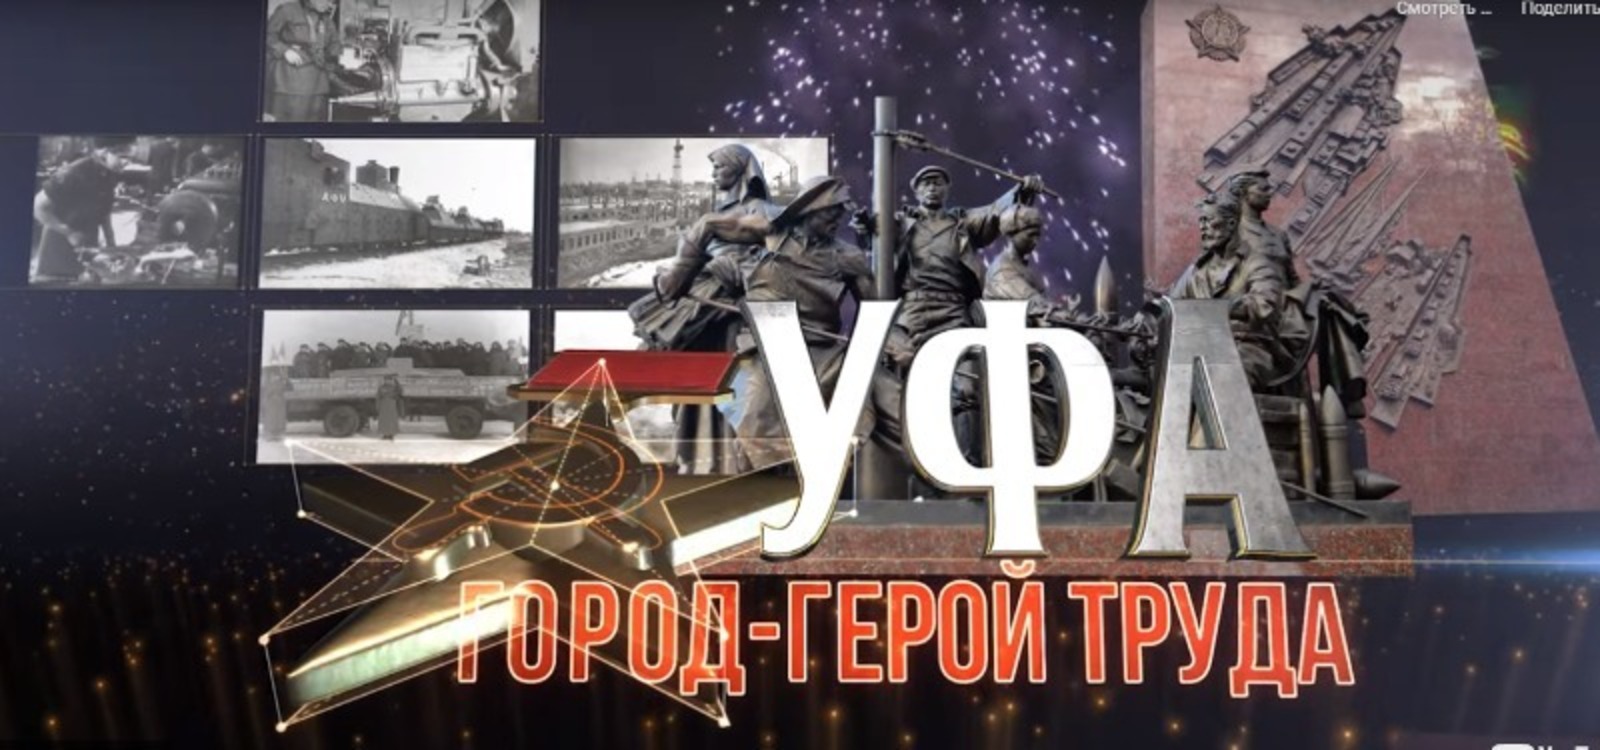 18 ноября  в 09.15 ч.   фильм «Уфа – город-герой труда» по БСТ смогут посмотреть жители республики